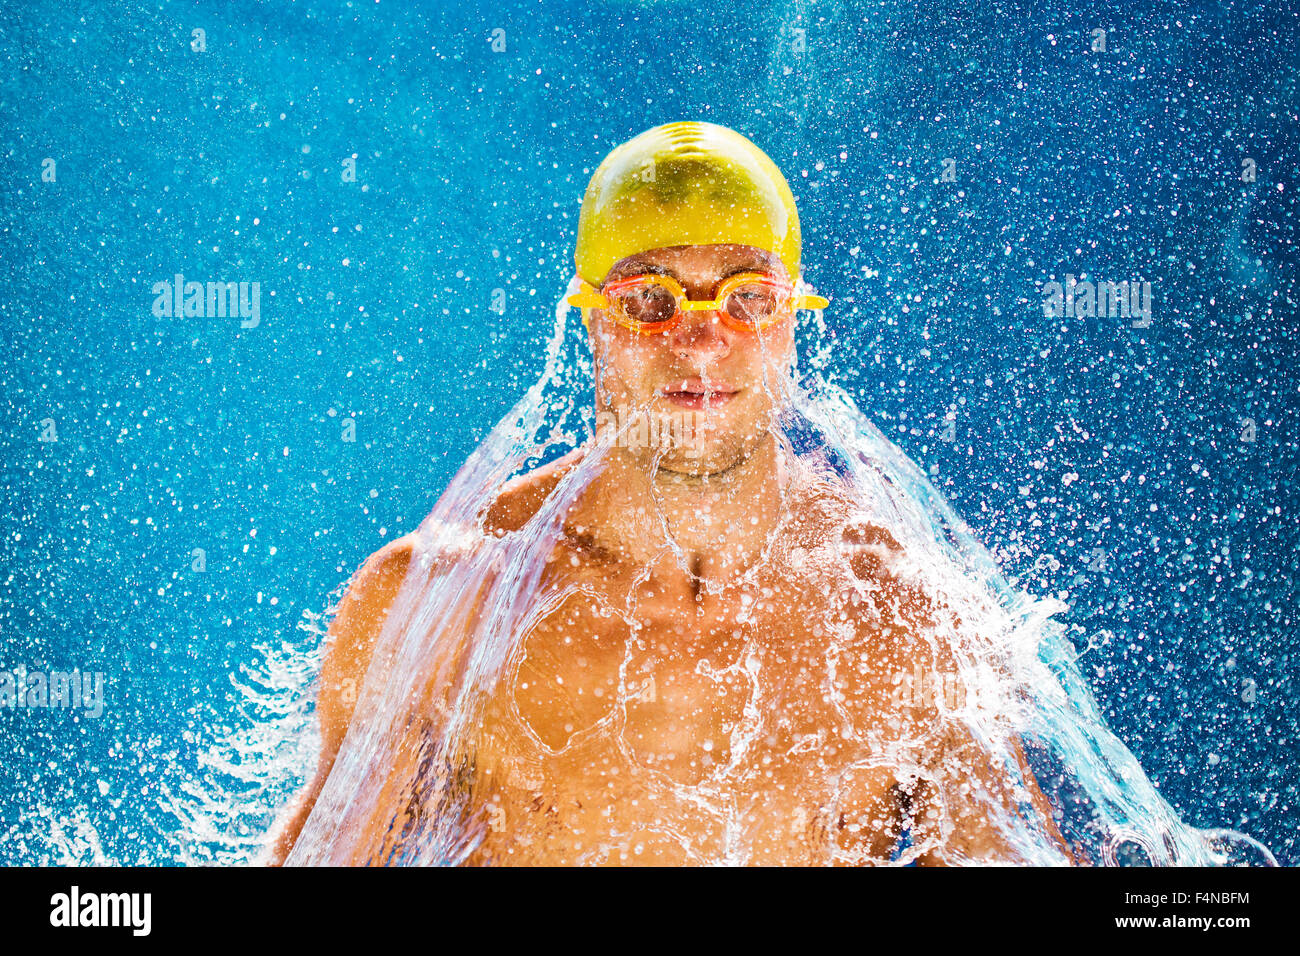 Nuotatore, risciacquo di acqua sulla testa Foto Stock